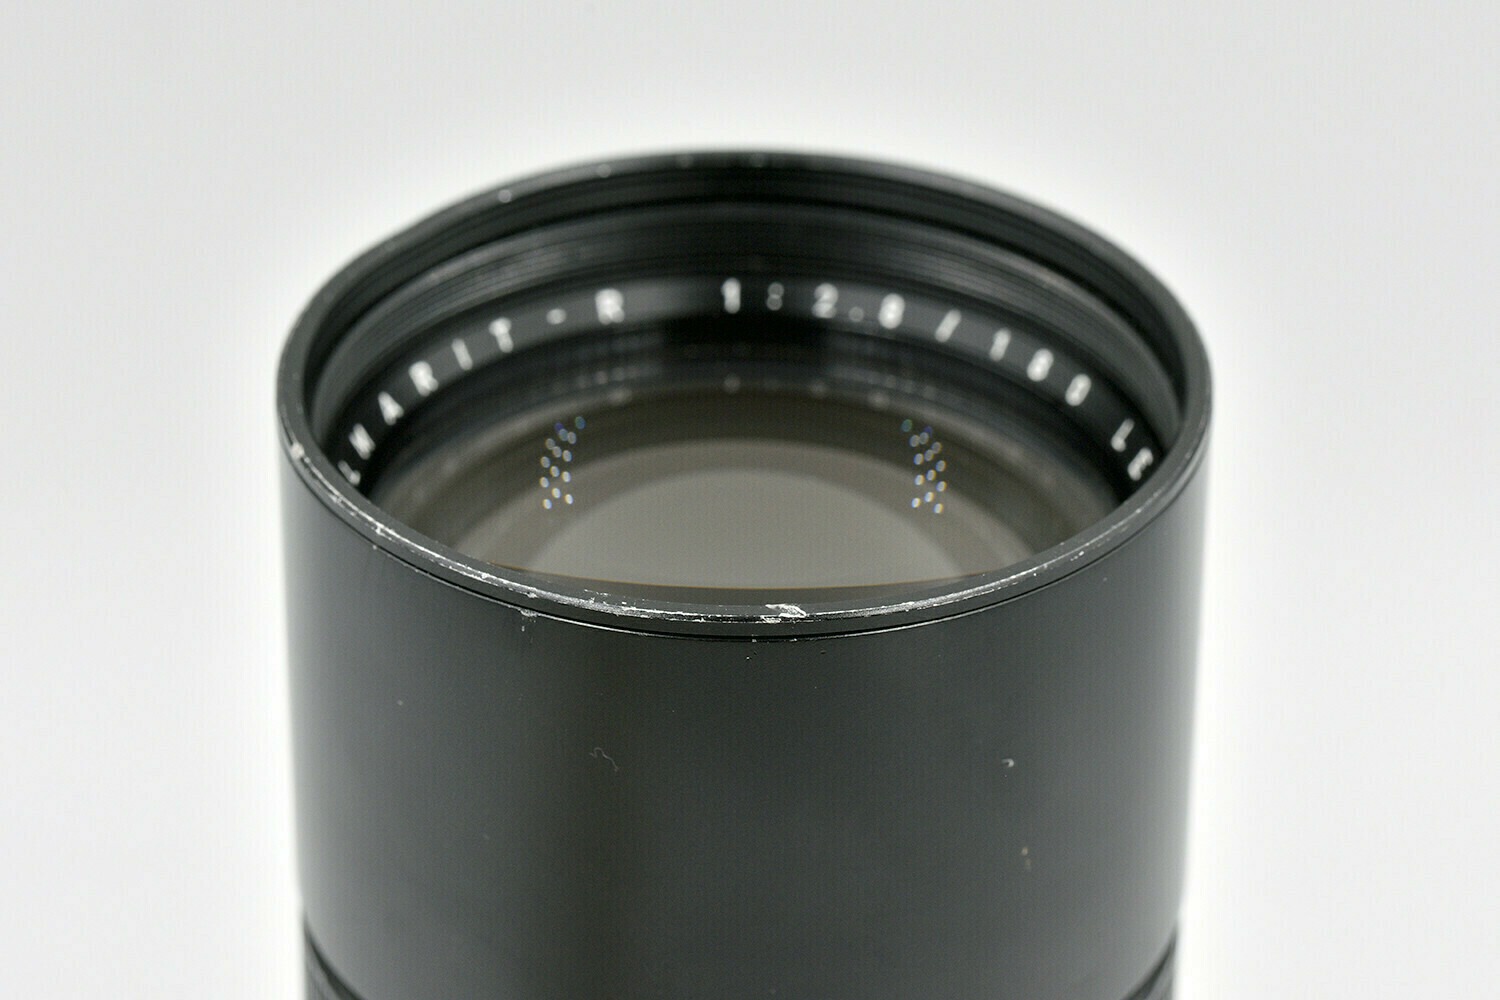 Leica Objectif R Elmarit 180 mm f/2.8 - 31497 2